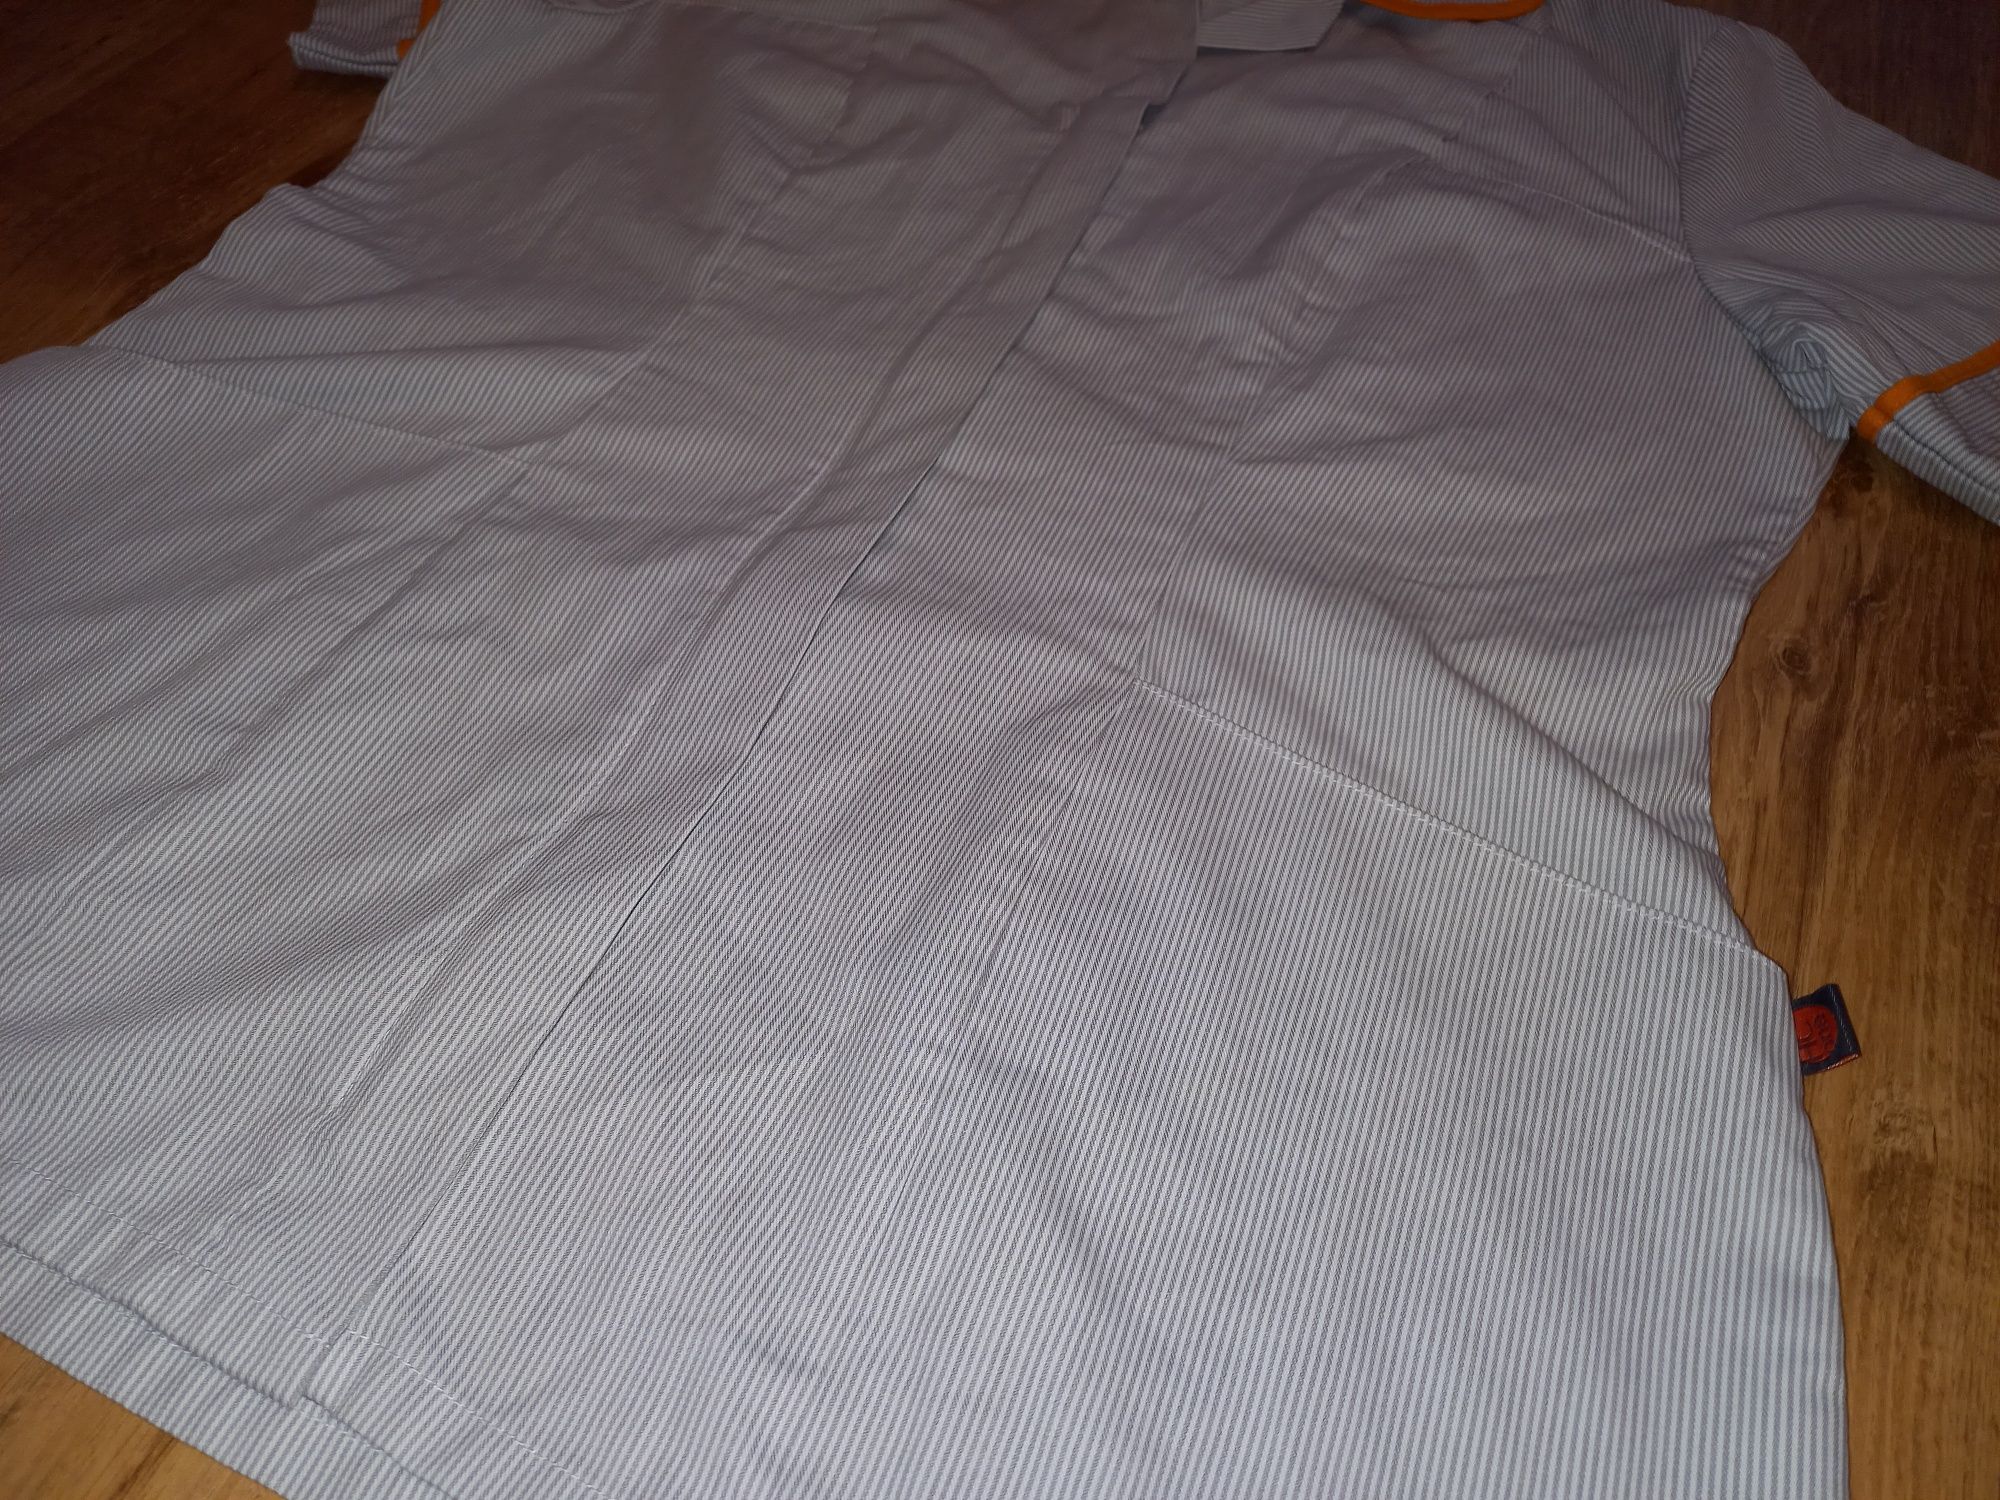 Biały mundurek (fartuch) damski w szare paski | r. 46 (3XL)